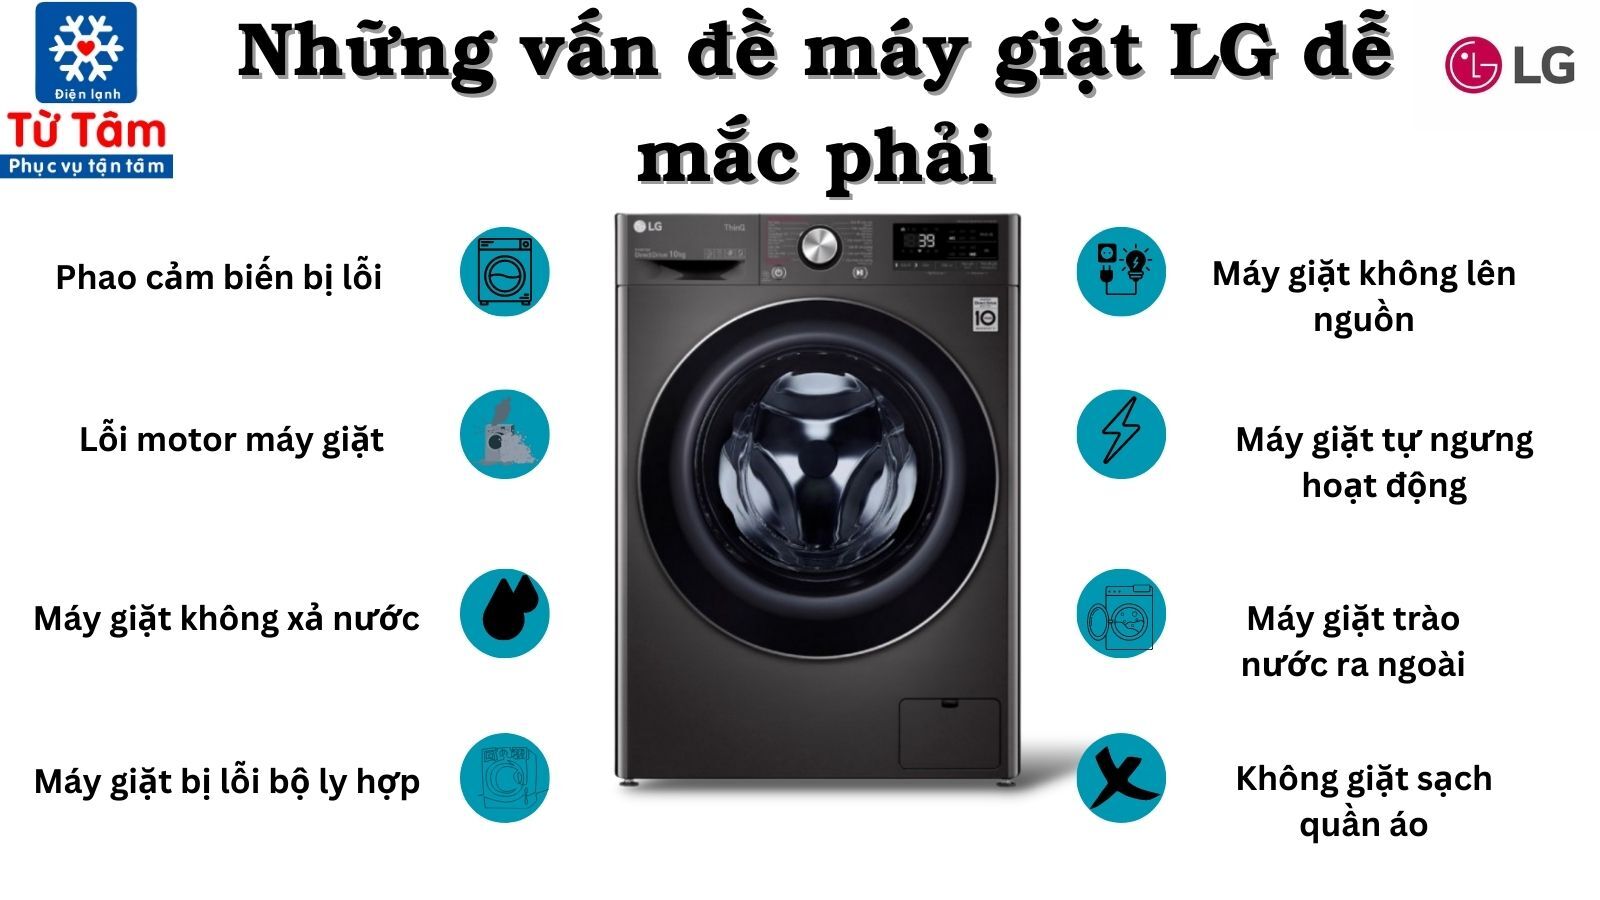 Sửa máy giặt LG gặp lỗi